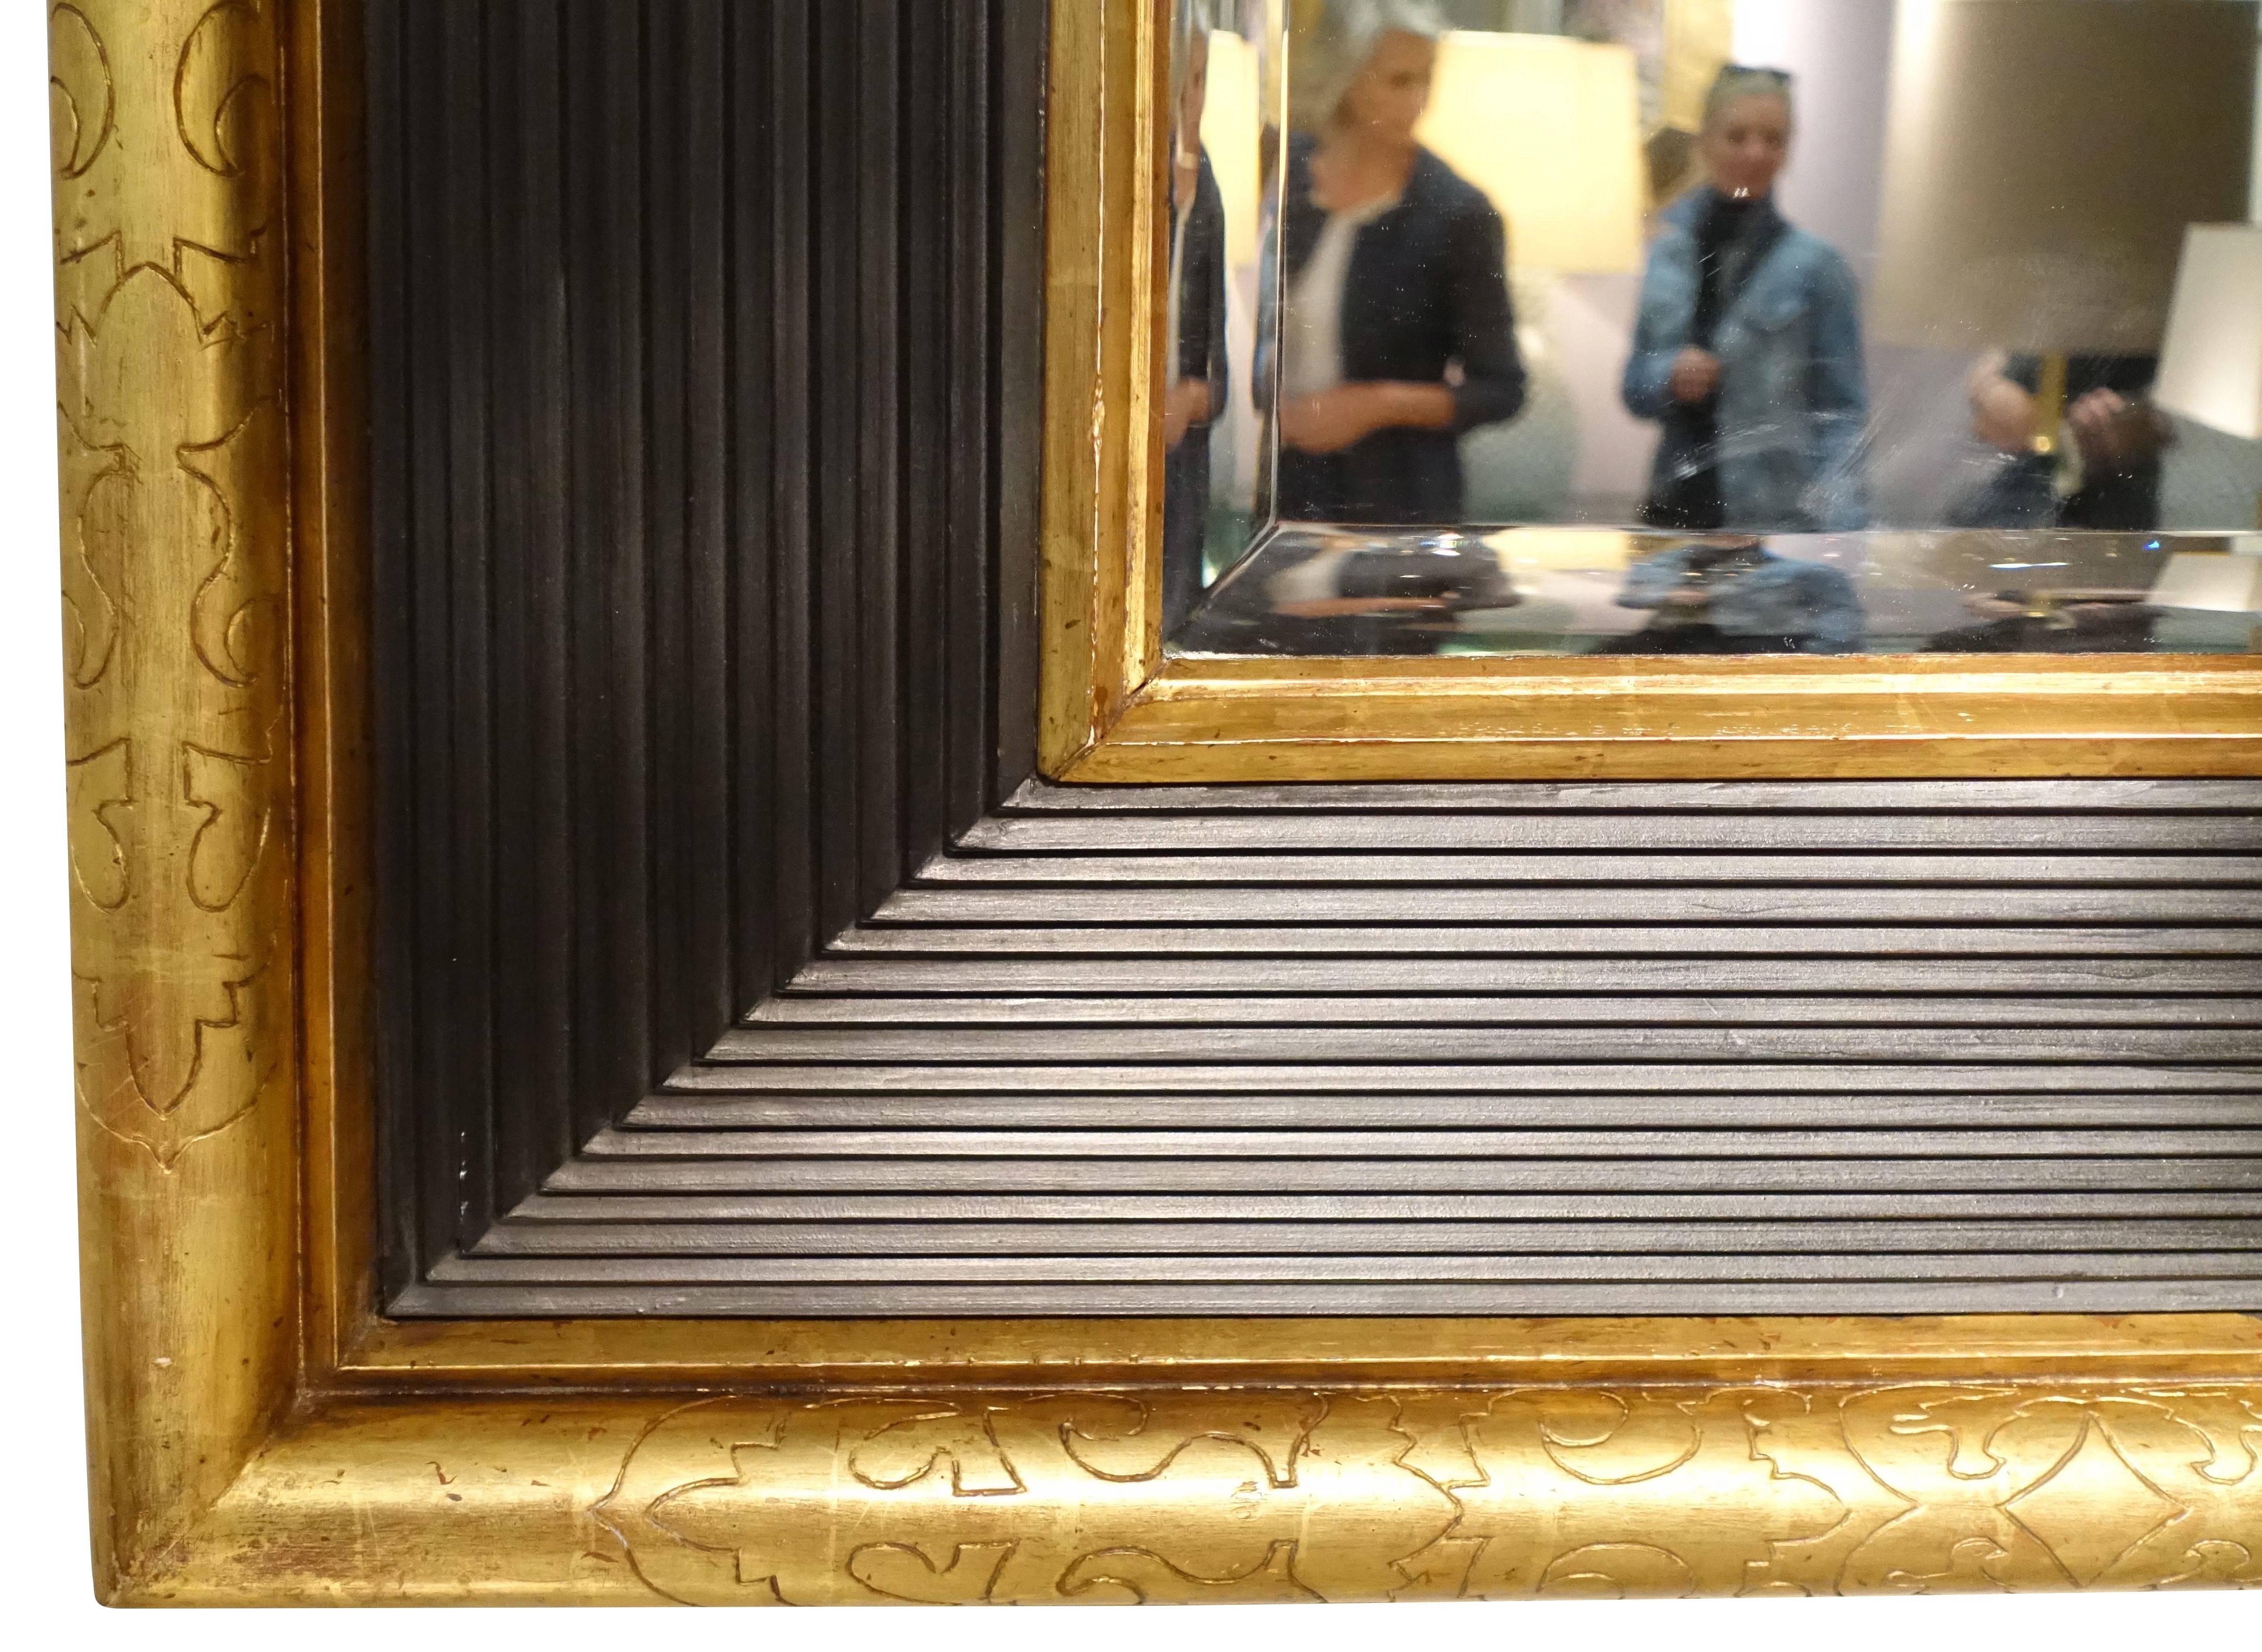 Miroir français gravé à l'or avec bordure de côtes brun foncé, vers 1850.
Les initiales du mari et de la femme, propriétaires d'origine, sont gravées sur les bordures.
Le cadre tridimensionnel s'étend sur 8